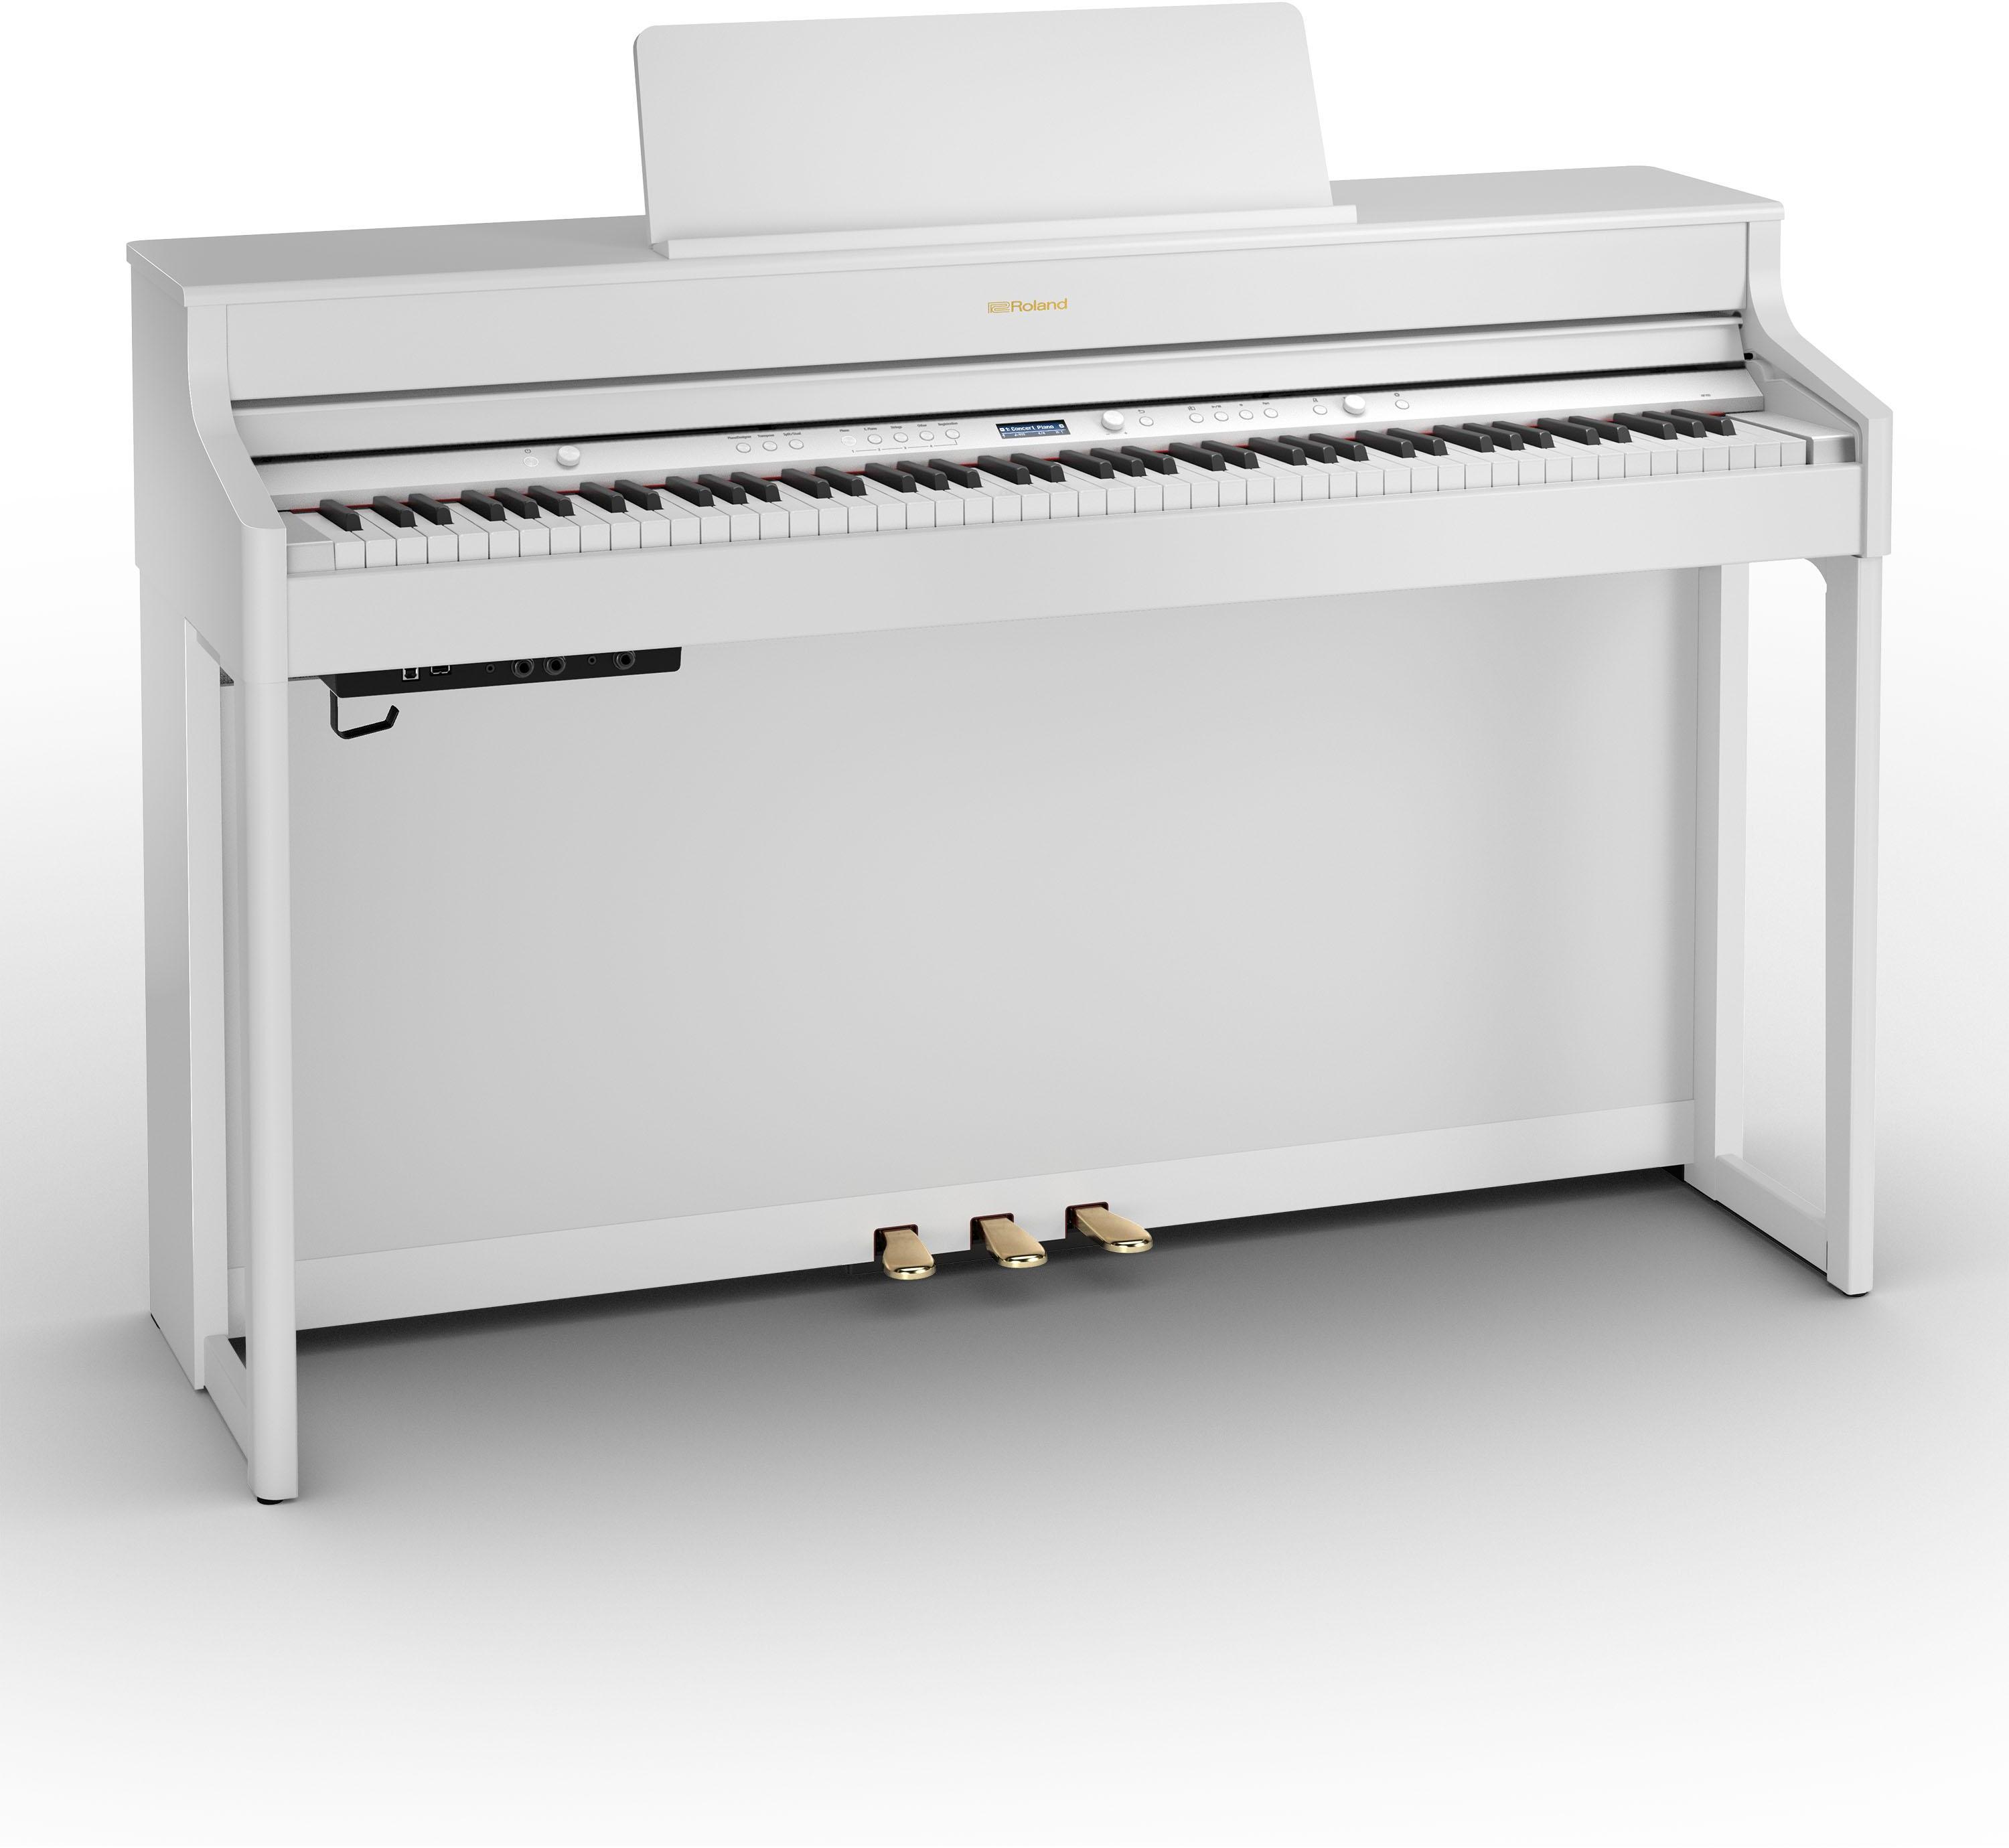 Piano numérique meuble Roland HP 702 WH White